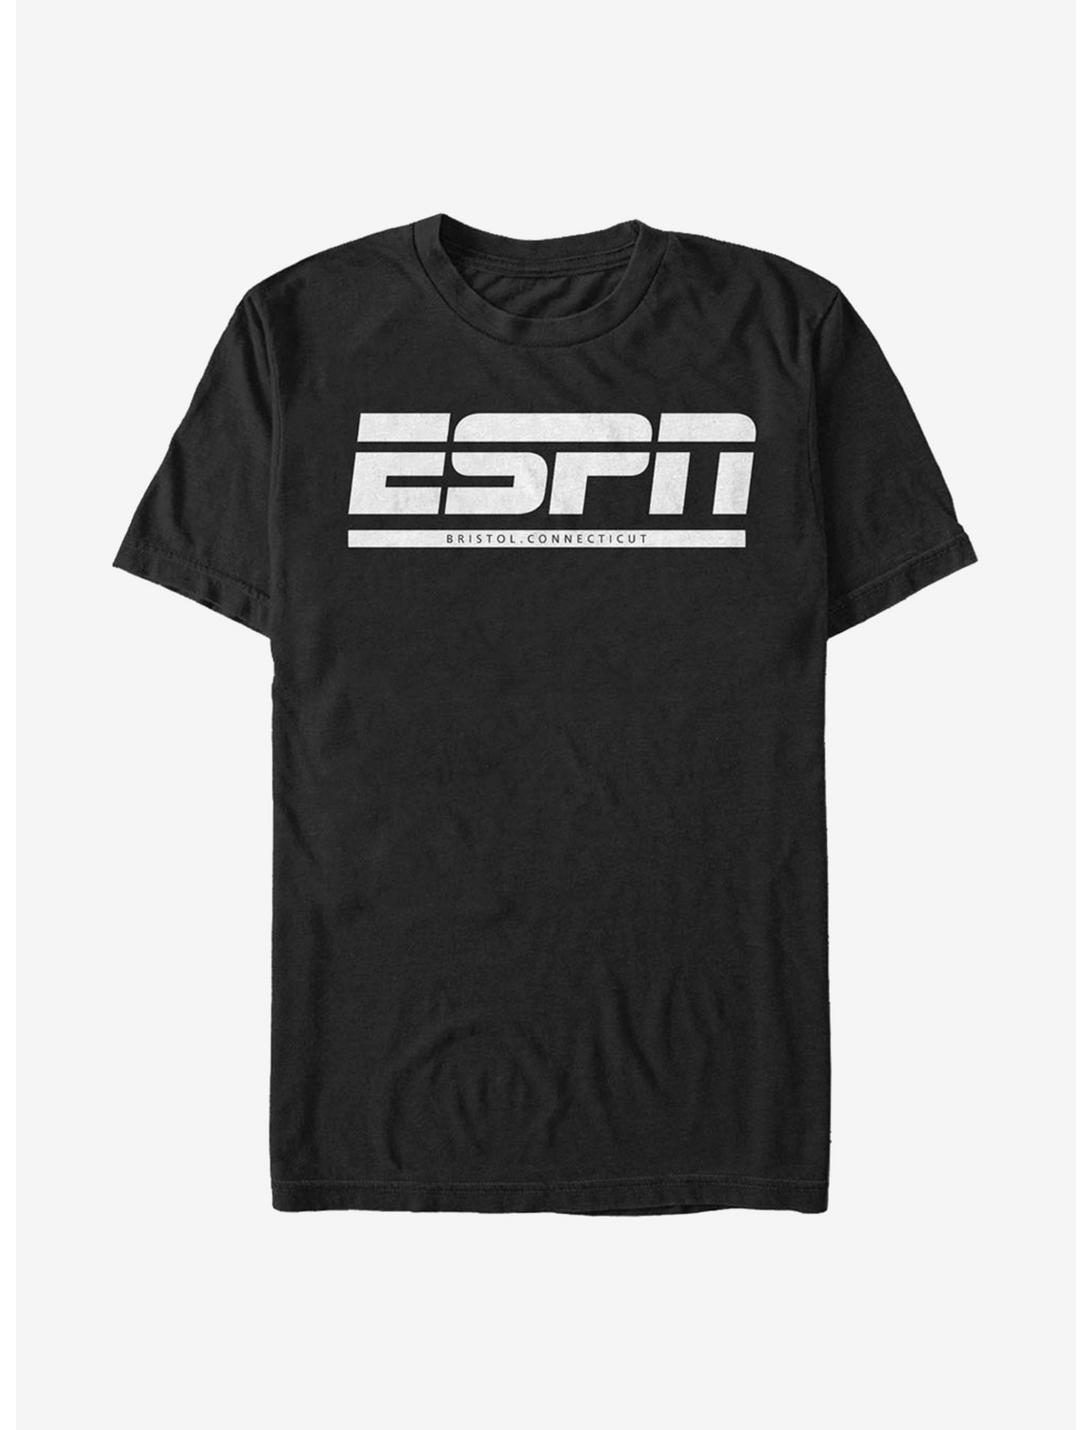 ESPN Bristol, Connecticut T-Shirt, BLACK, hi-res